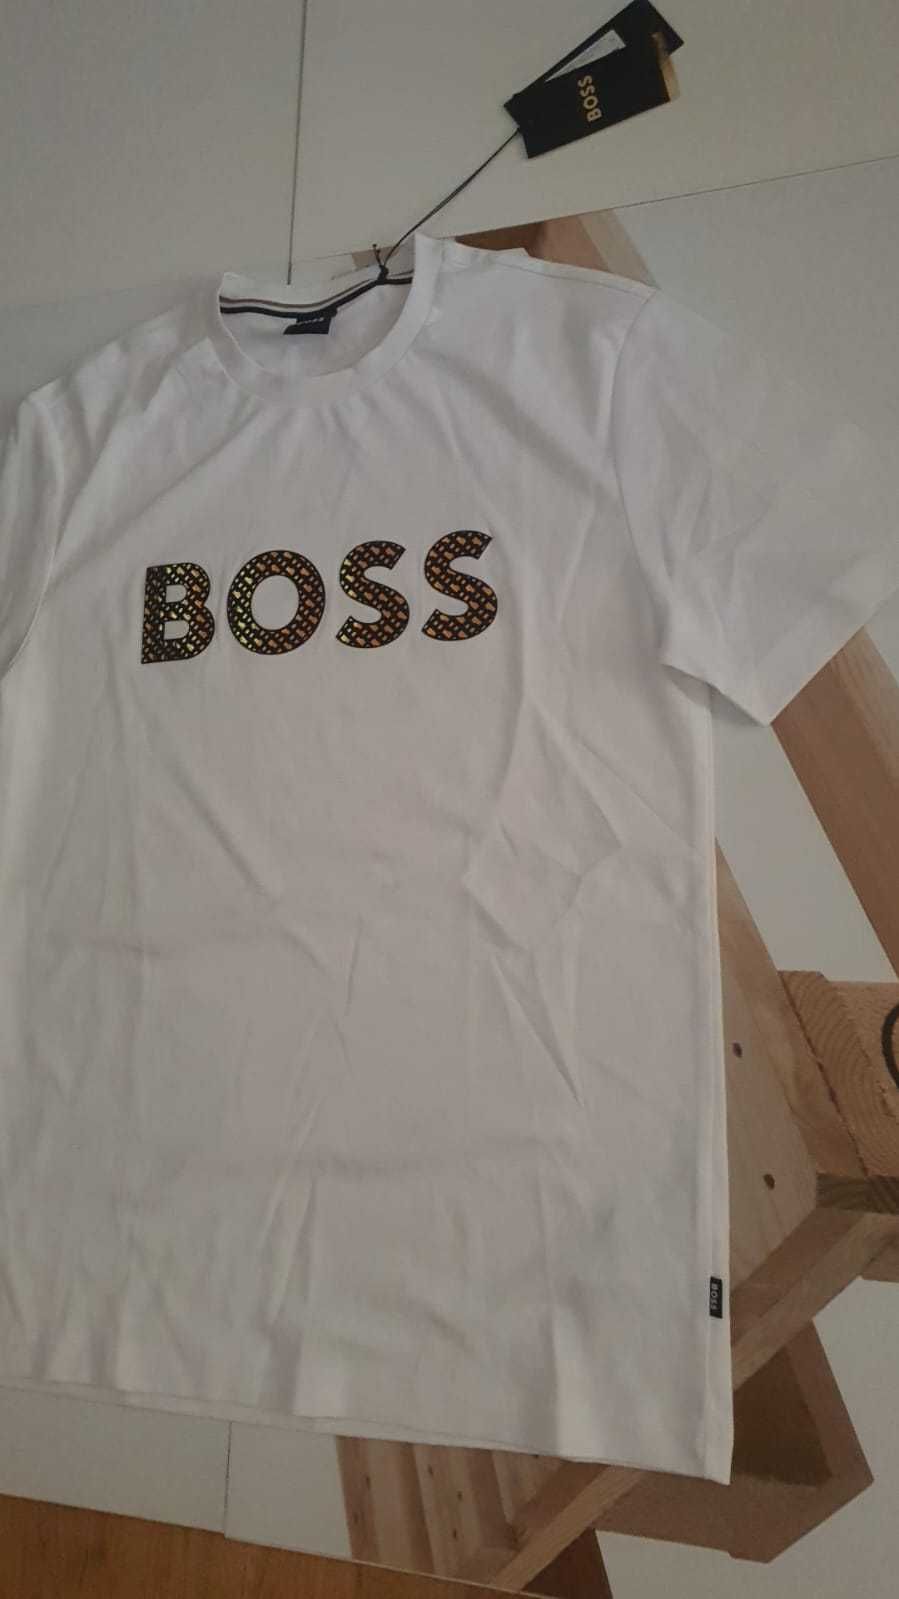 Vand tricou barbati Hugo Boss masura L  si XL  nou cu eticheta.